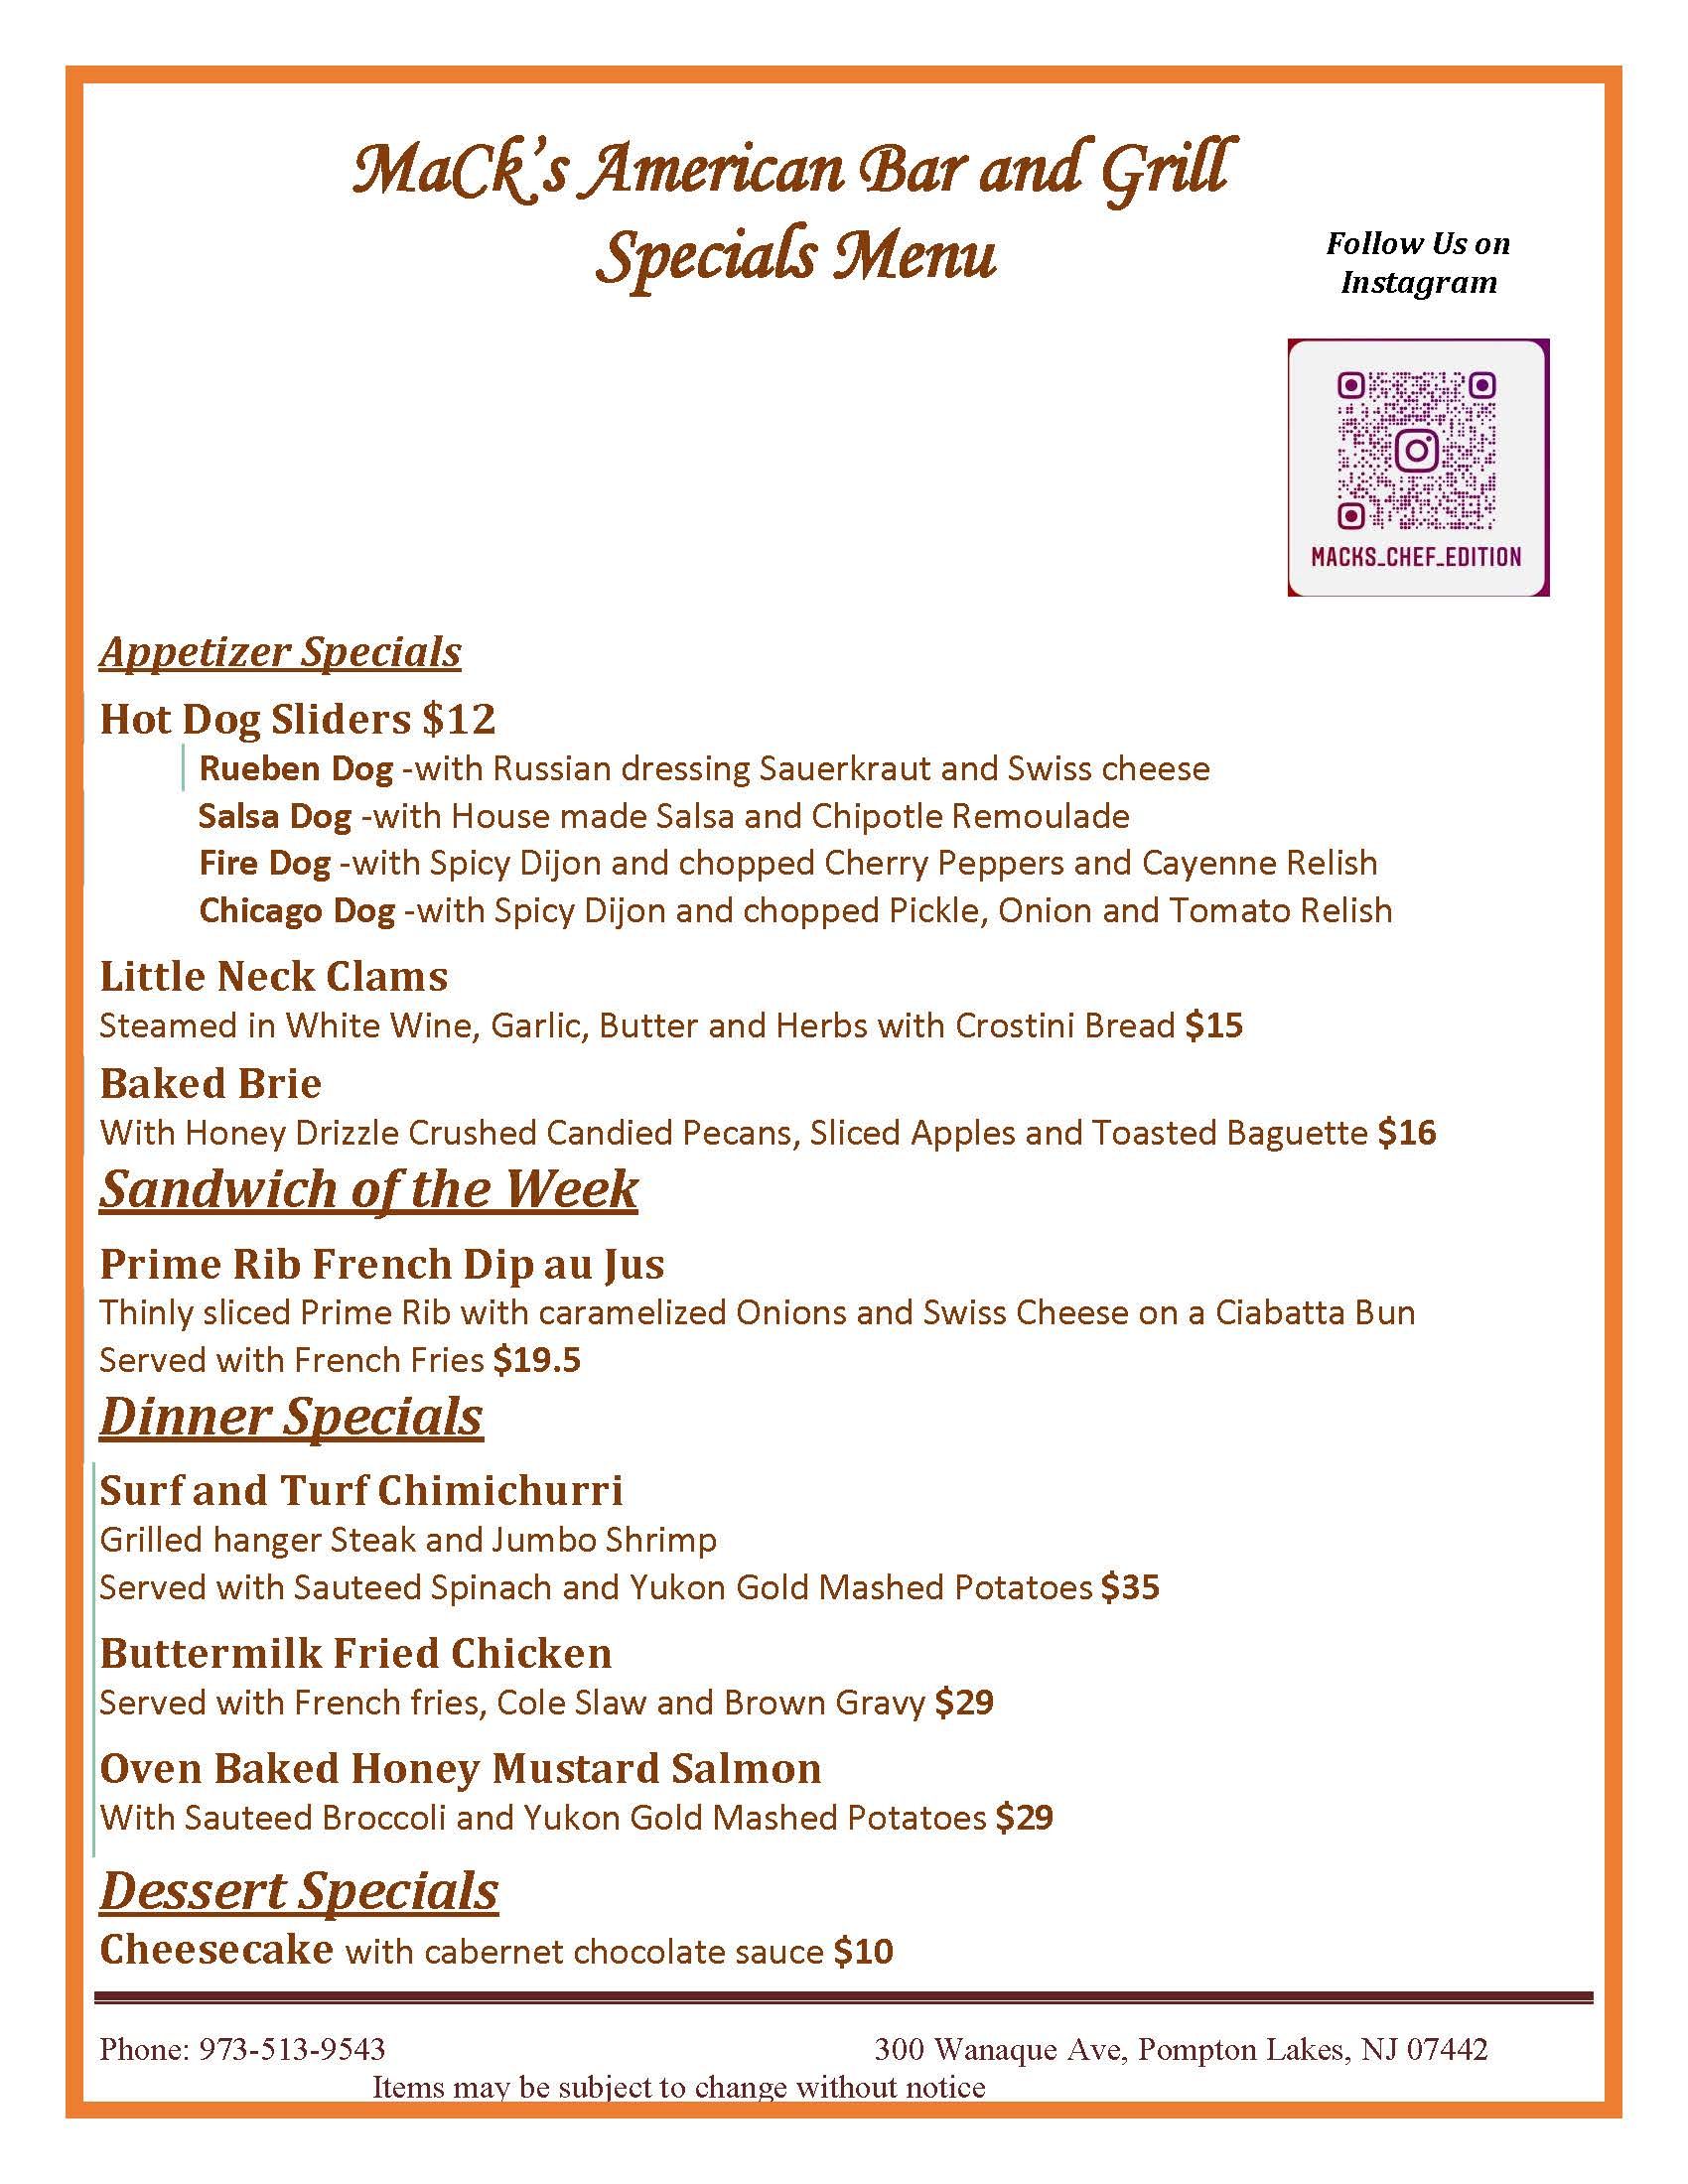 Specials menu